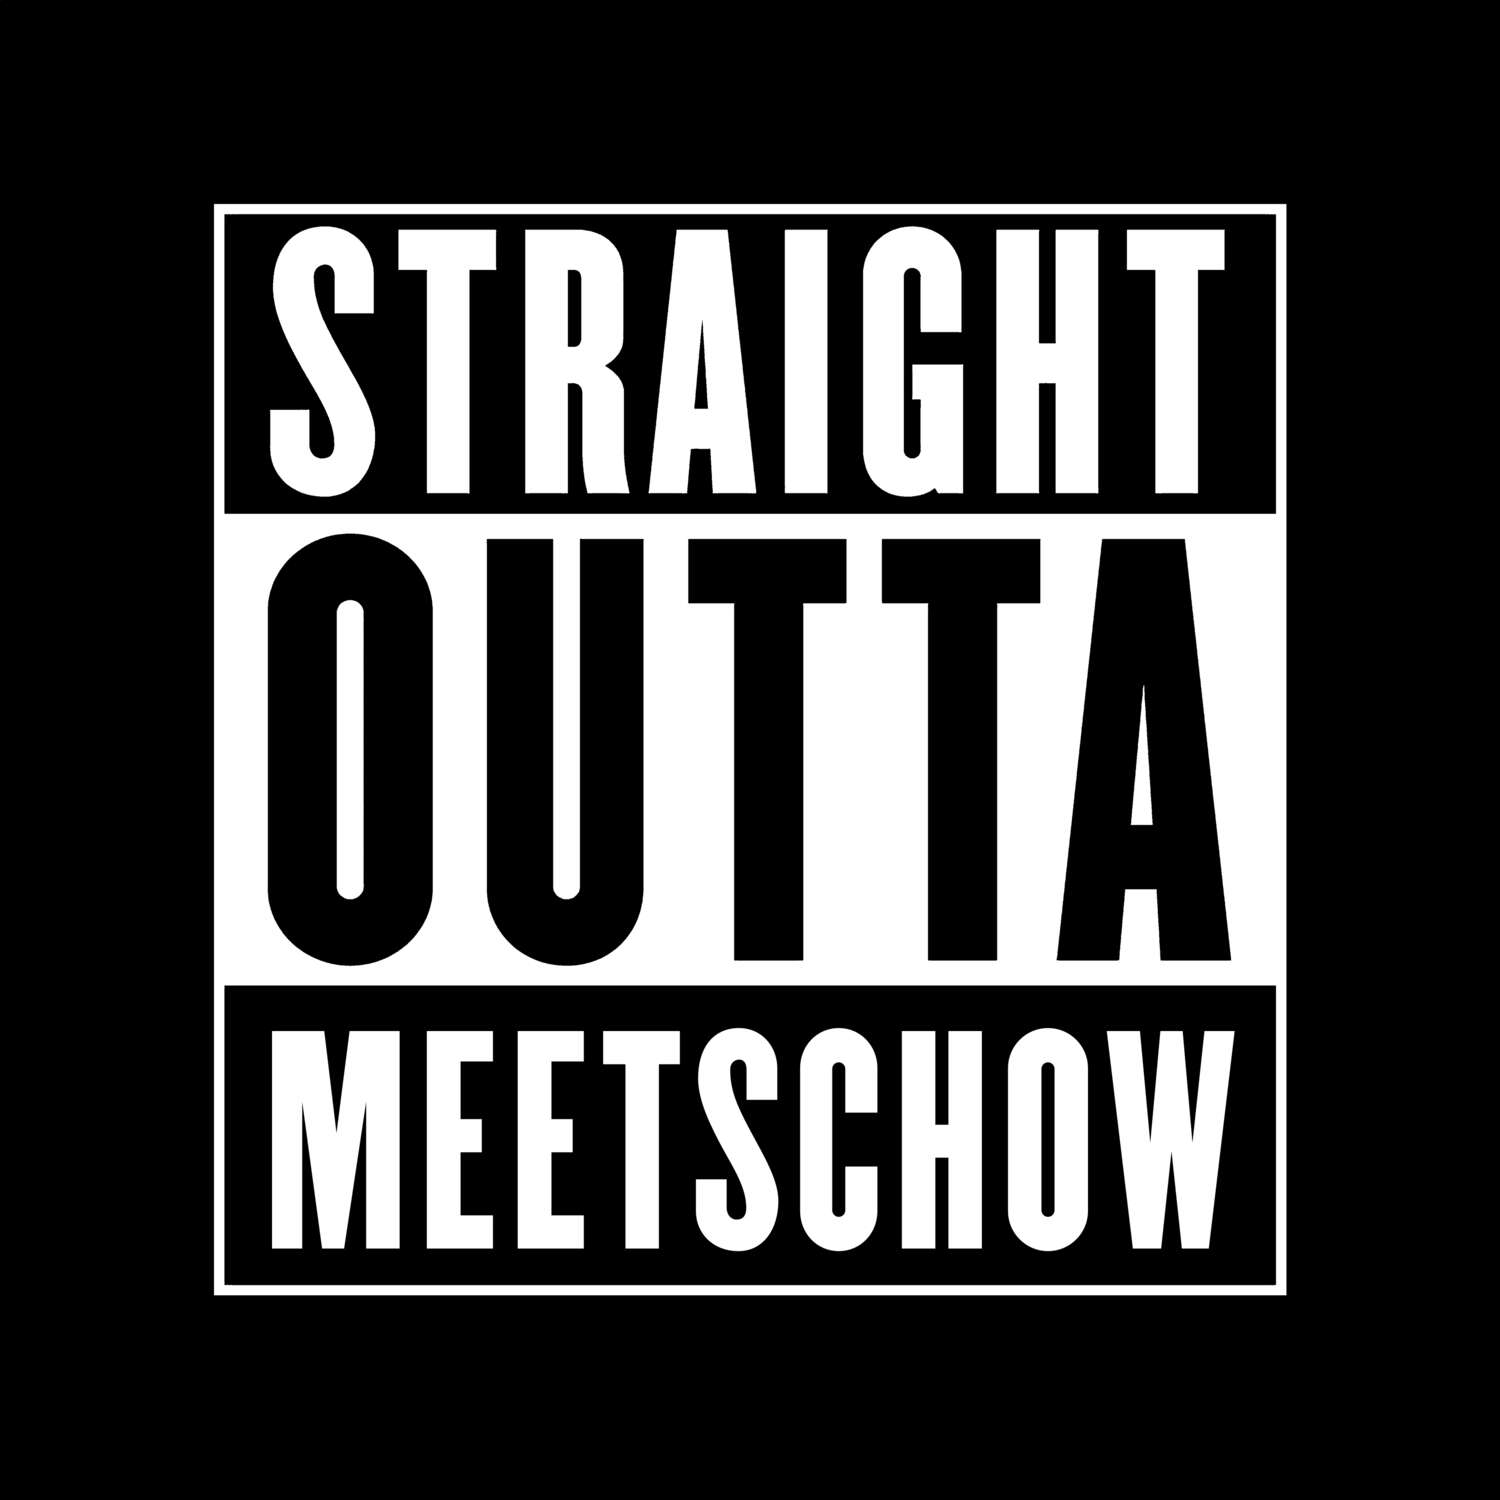 Meetschow T-Shirt »Straight Outta«